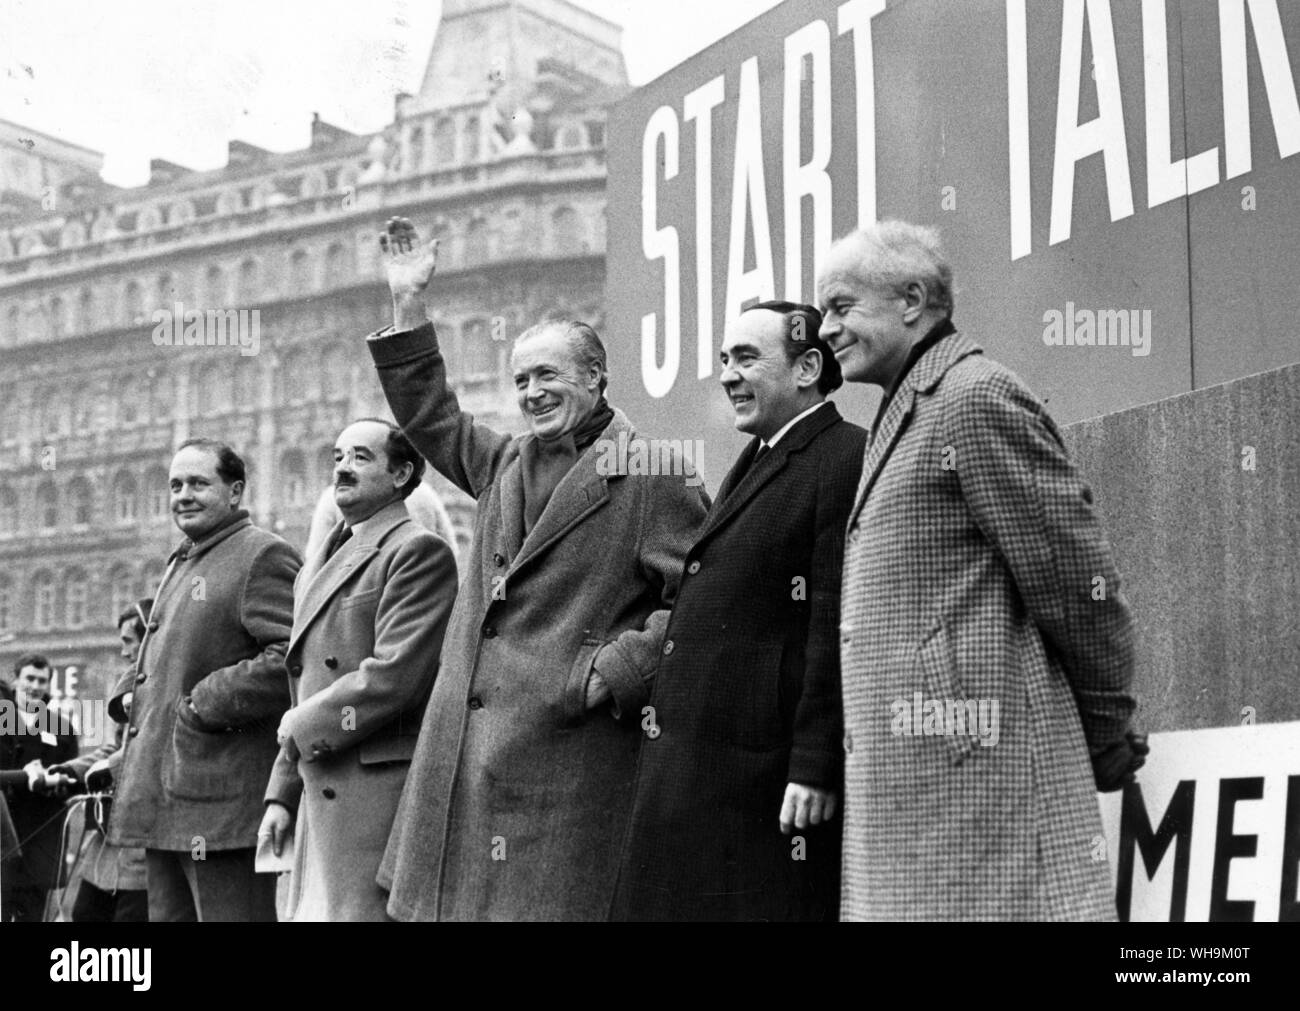 15 Janvier 1967 : M. Duncan Sandys et d'autres députés conservateurs ont éclaté avec violence à Londres. La police se sont battus pour maintenir l'ordre dans la foule qui se dirigeaient vers Downing Street. Banque D'Images